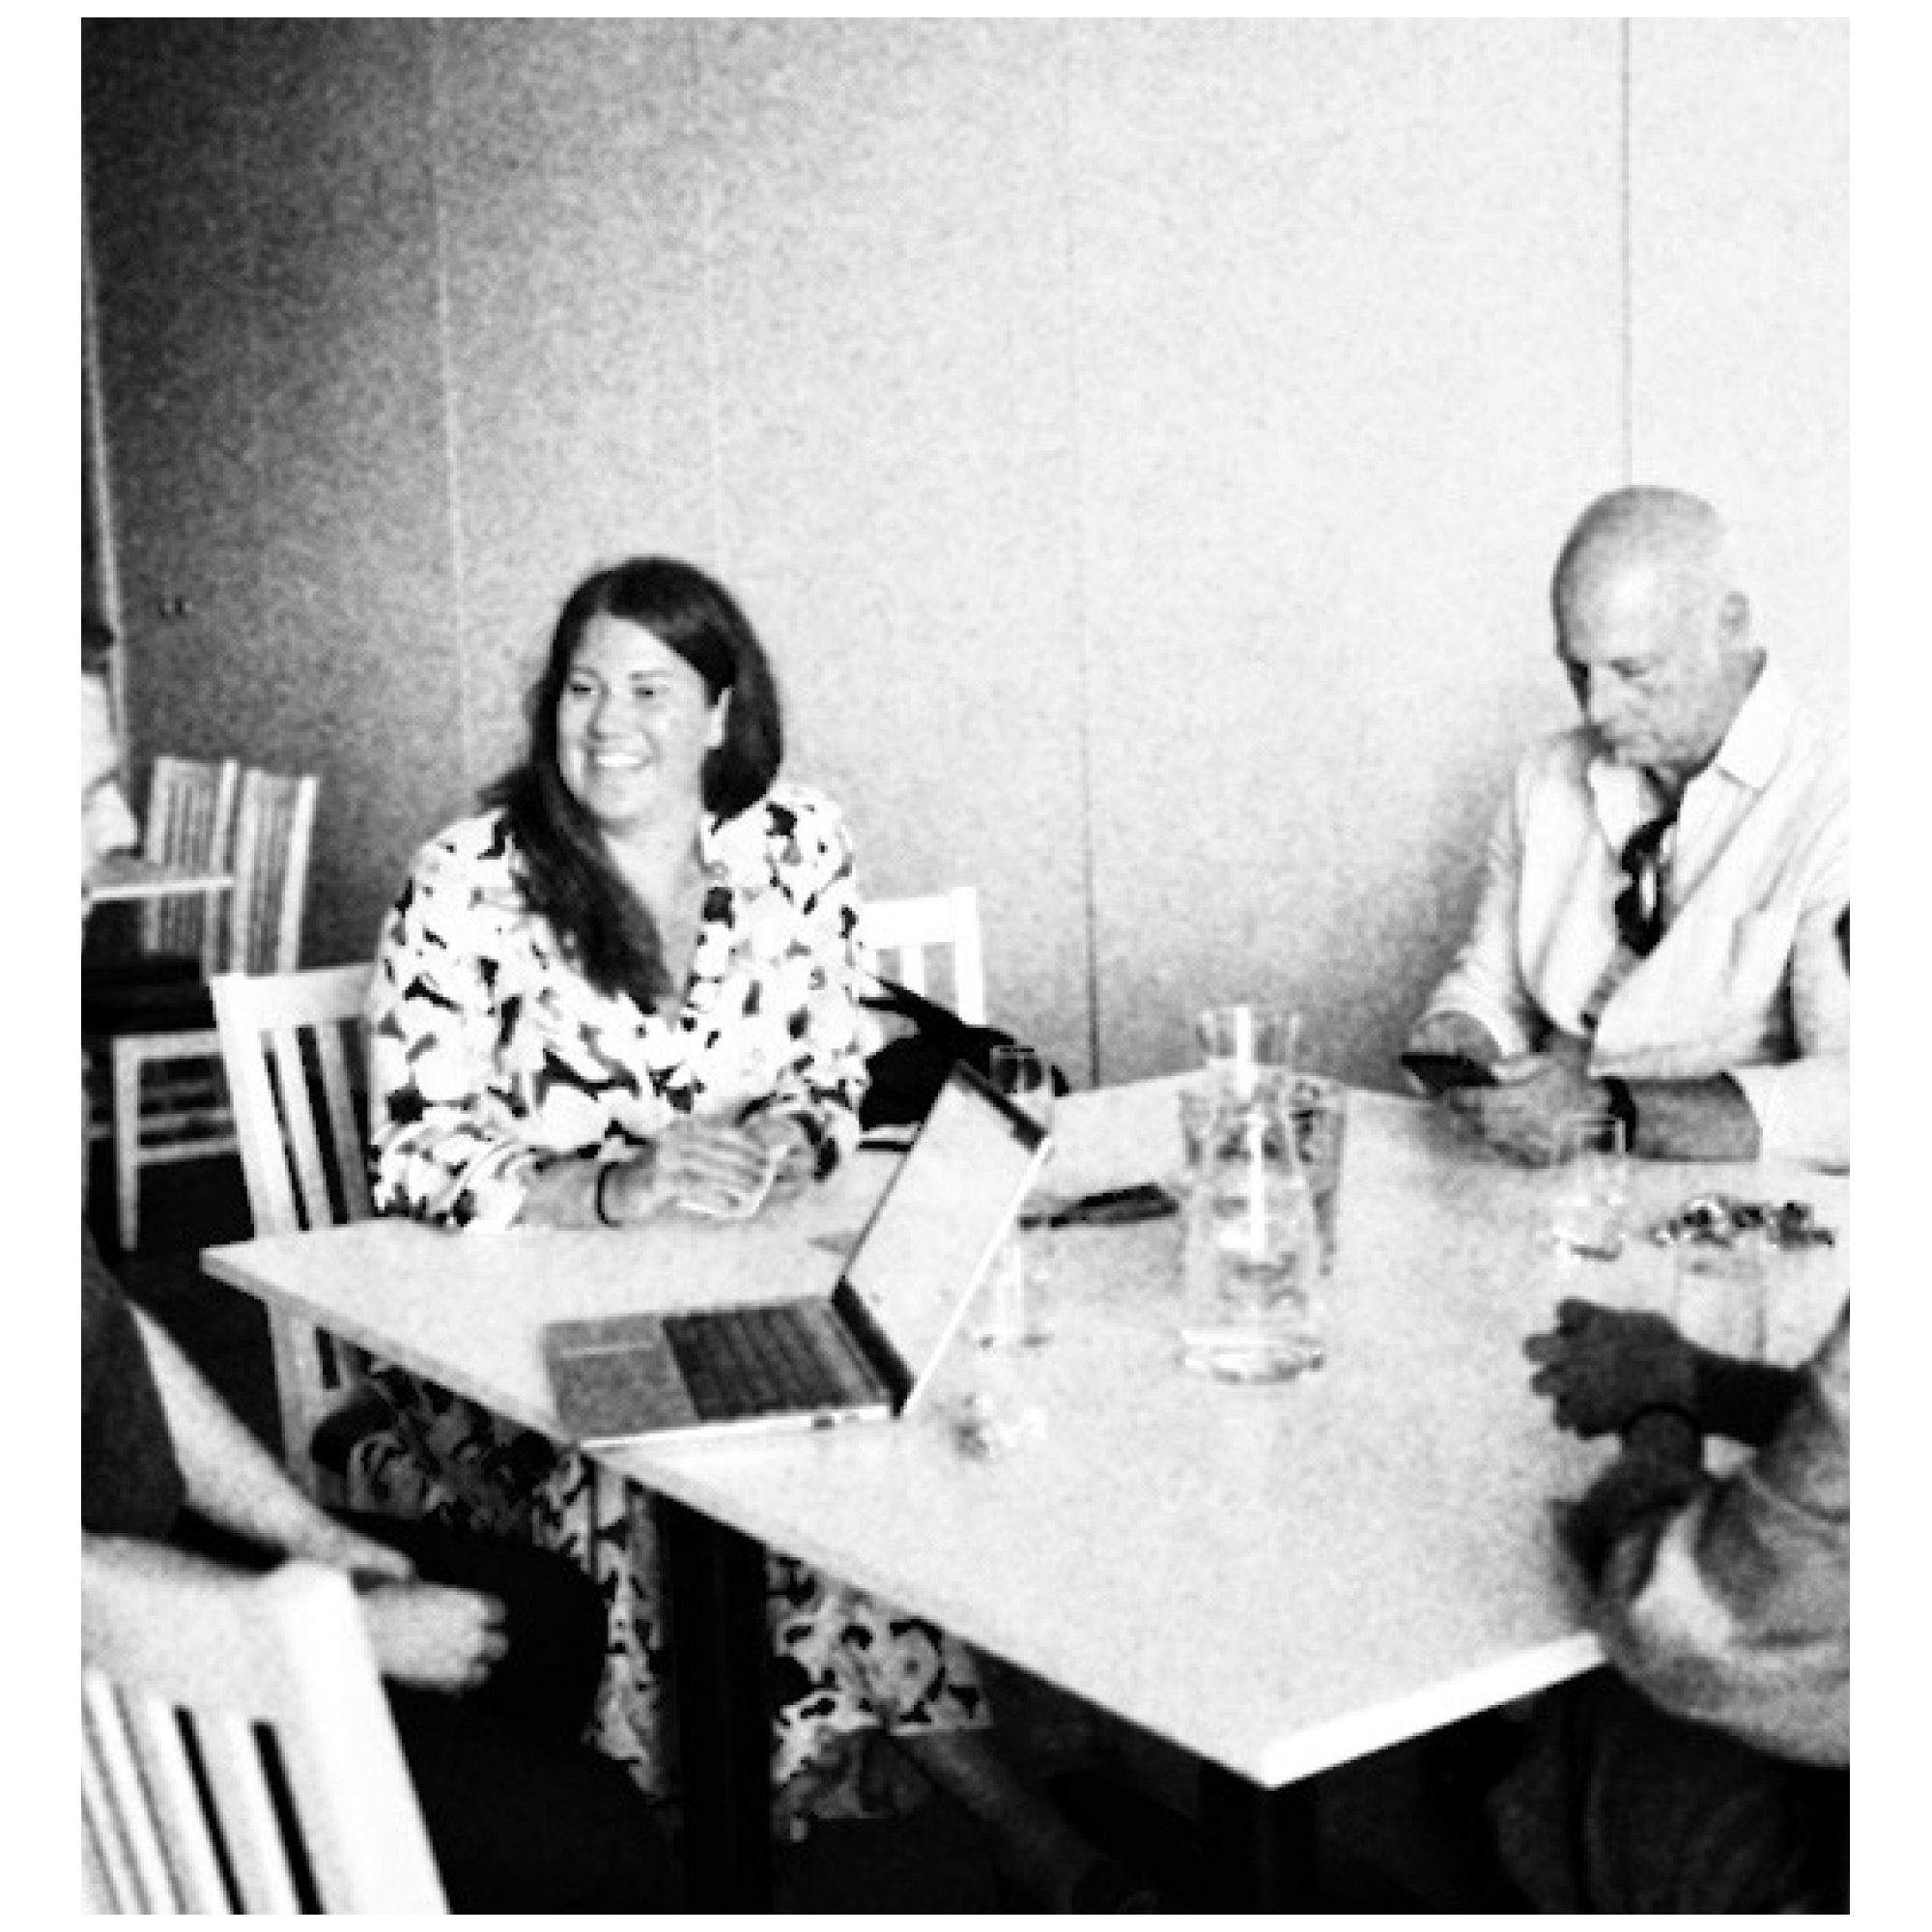 Syntolkning: ögonblicksfotografi från hackathon. I bild syns fyra personer, samtalandes runt ett konferensbord. PÅ bordet står dator, karaff, glas och anteckningsblock. Stämningen är koncentrerad och lättsam.